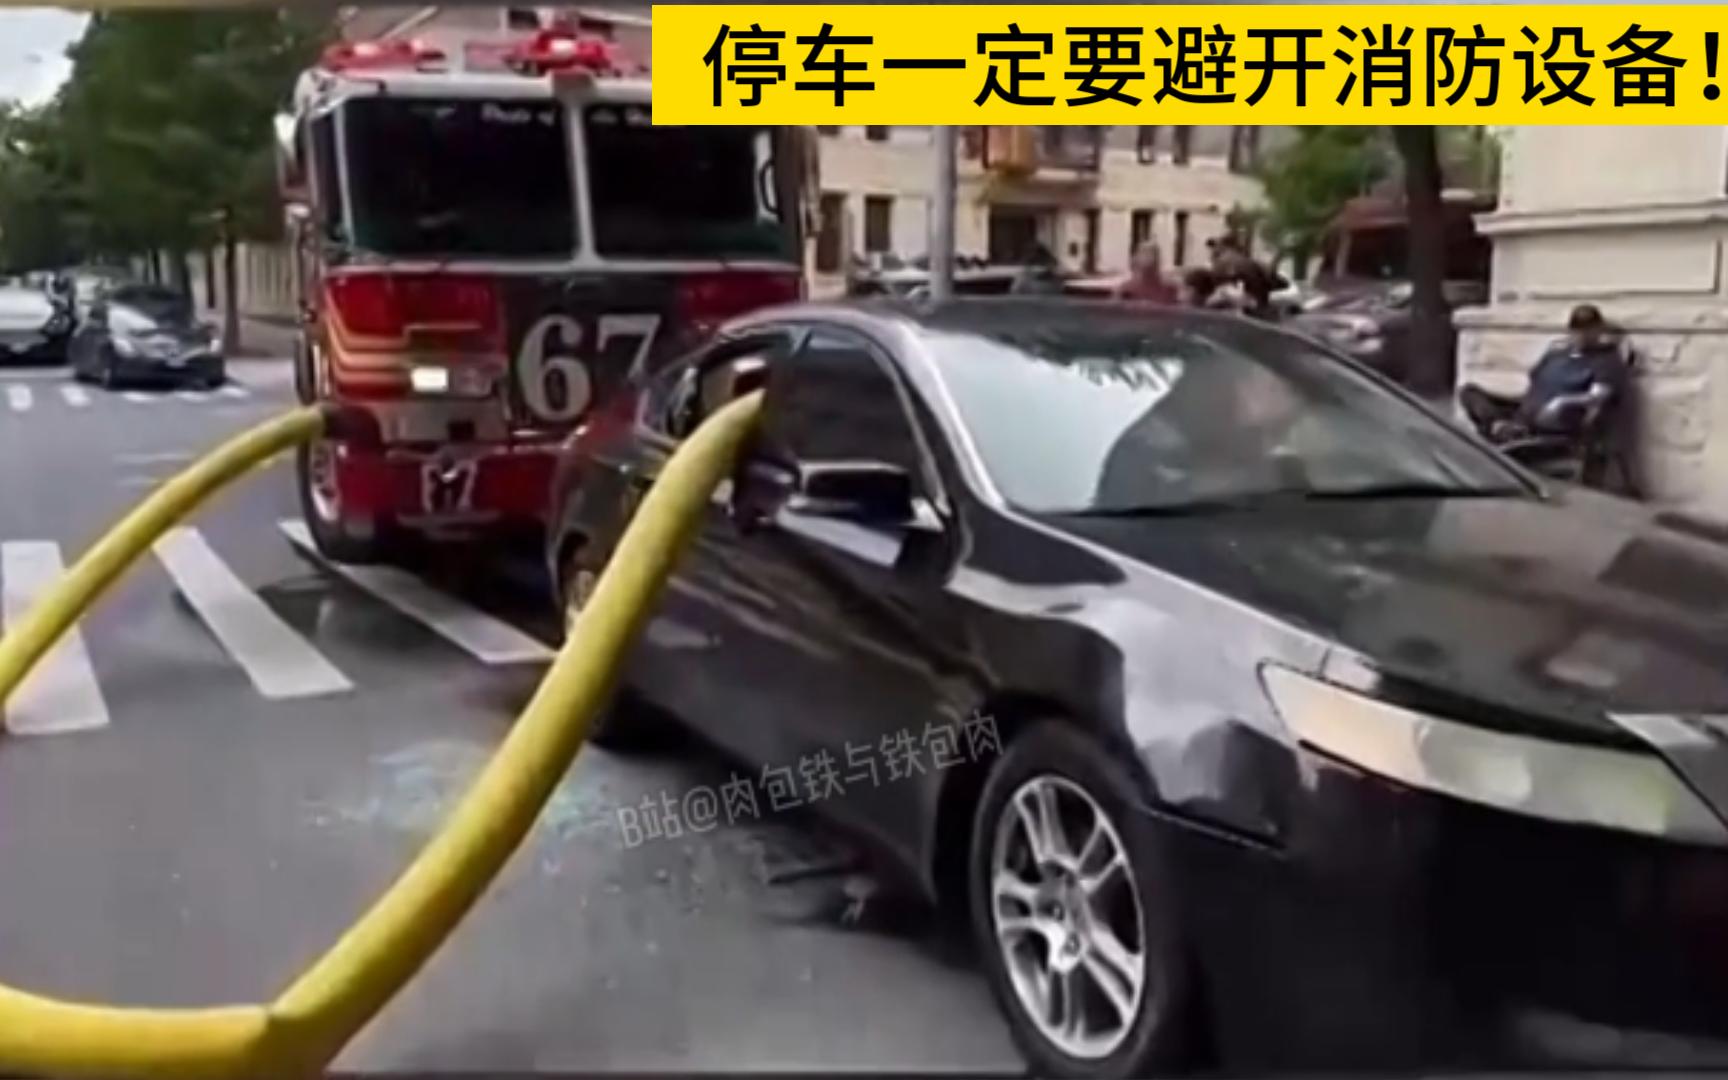 消防栓前面停车的后果